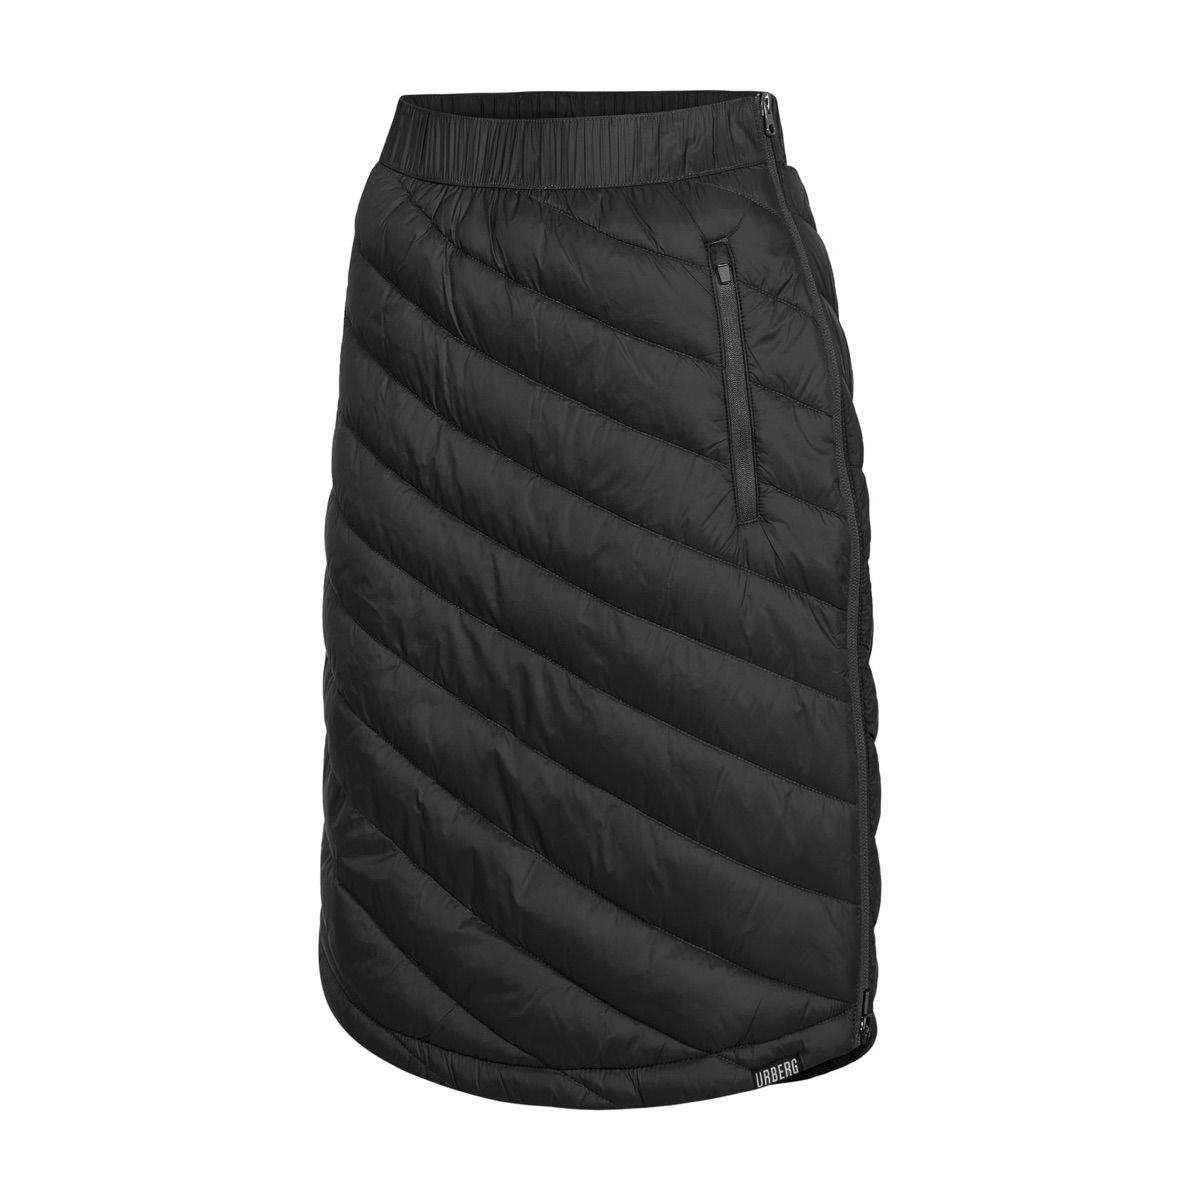 Urberg Women's Tallvik Padded Skirt Black Beauty